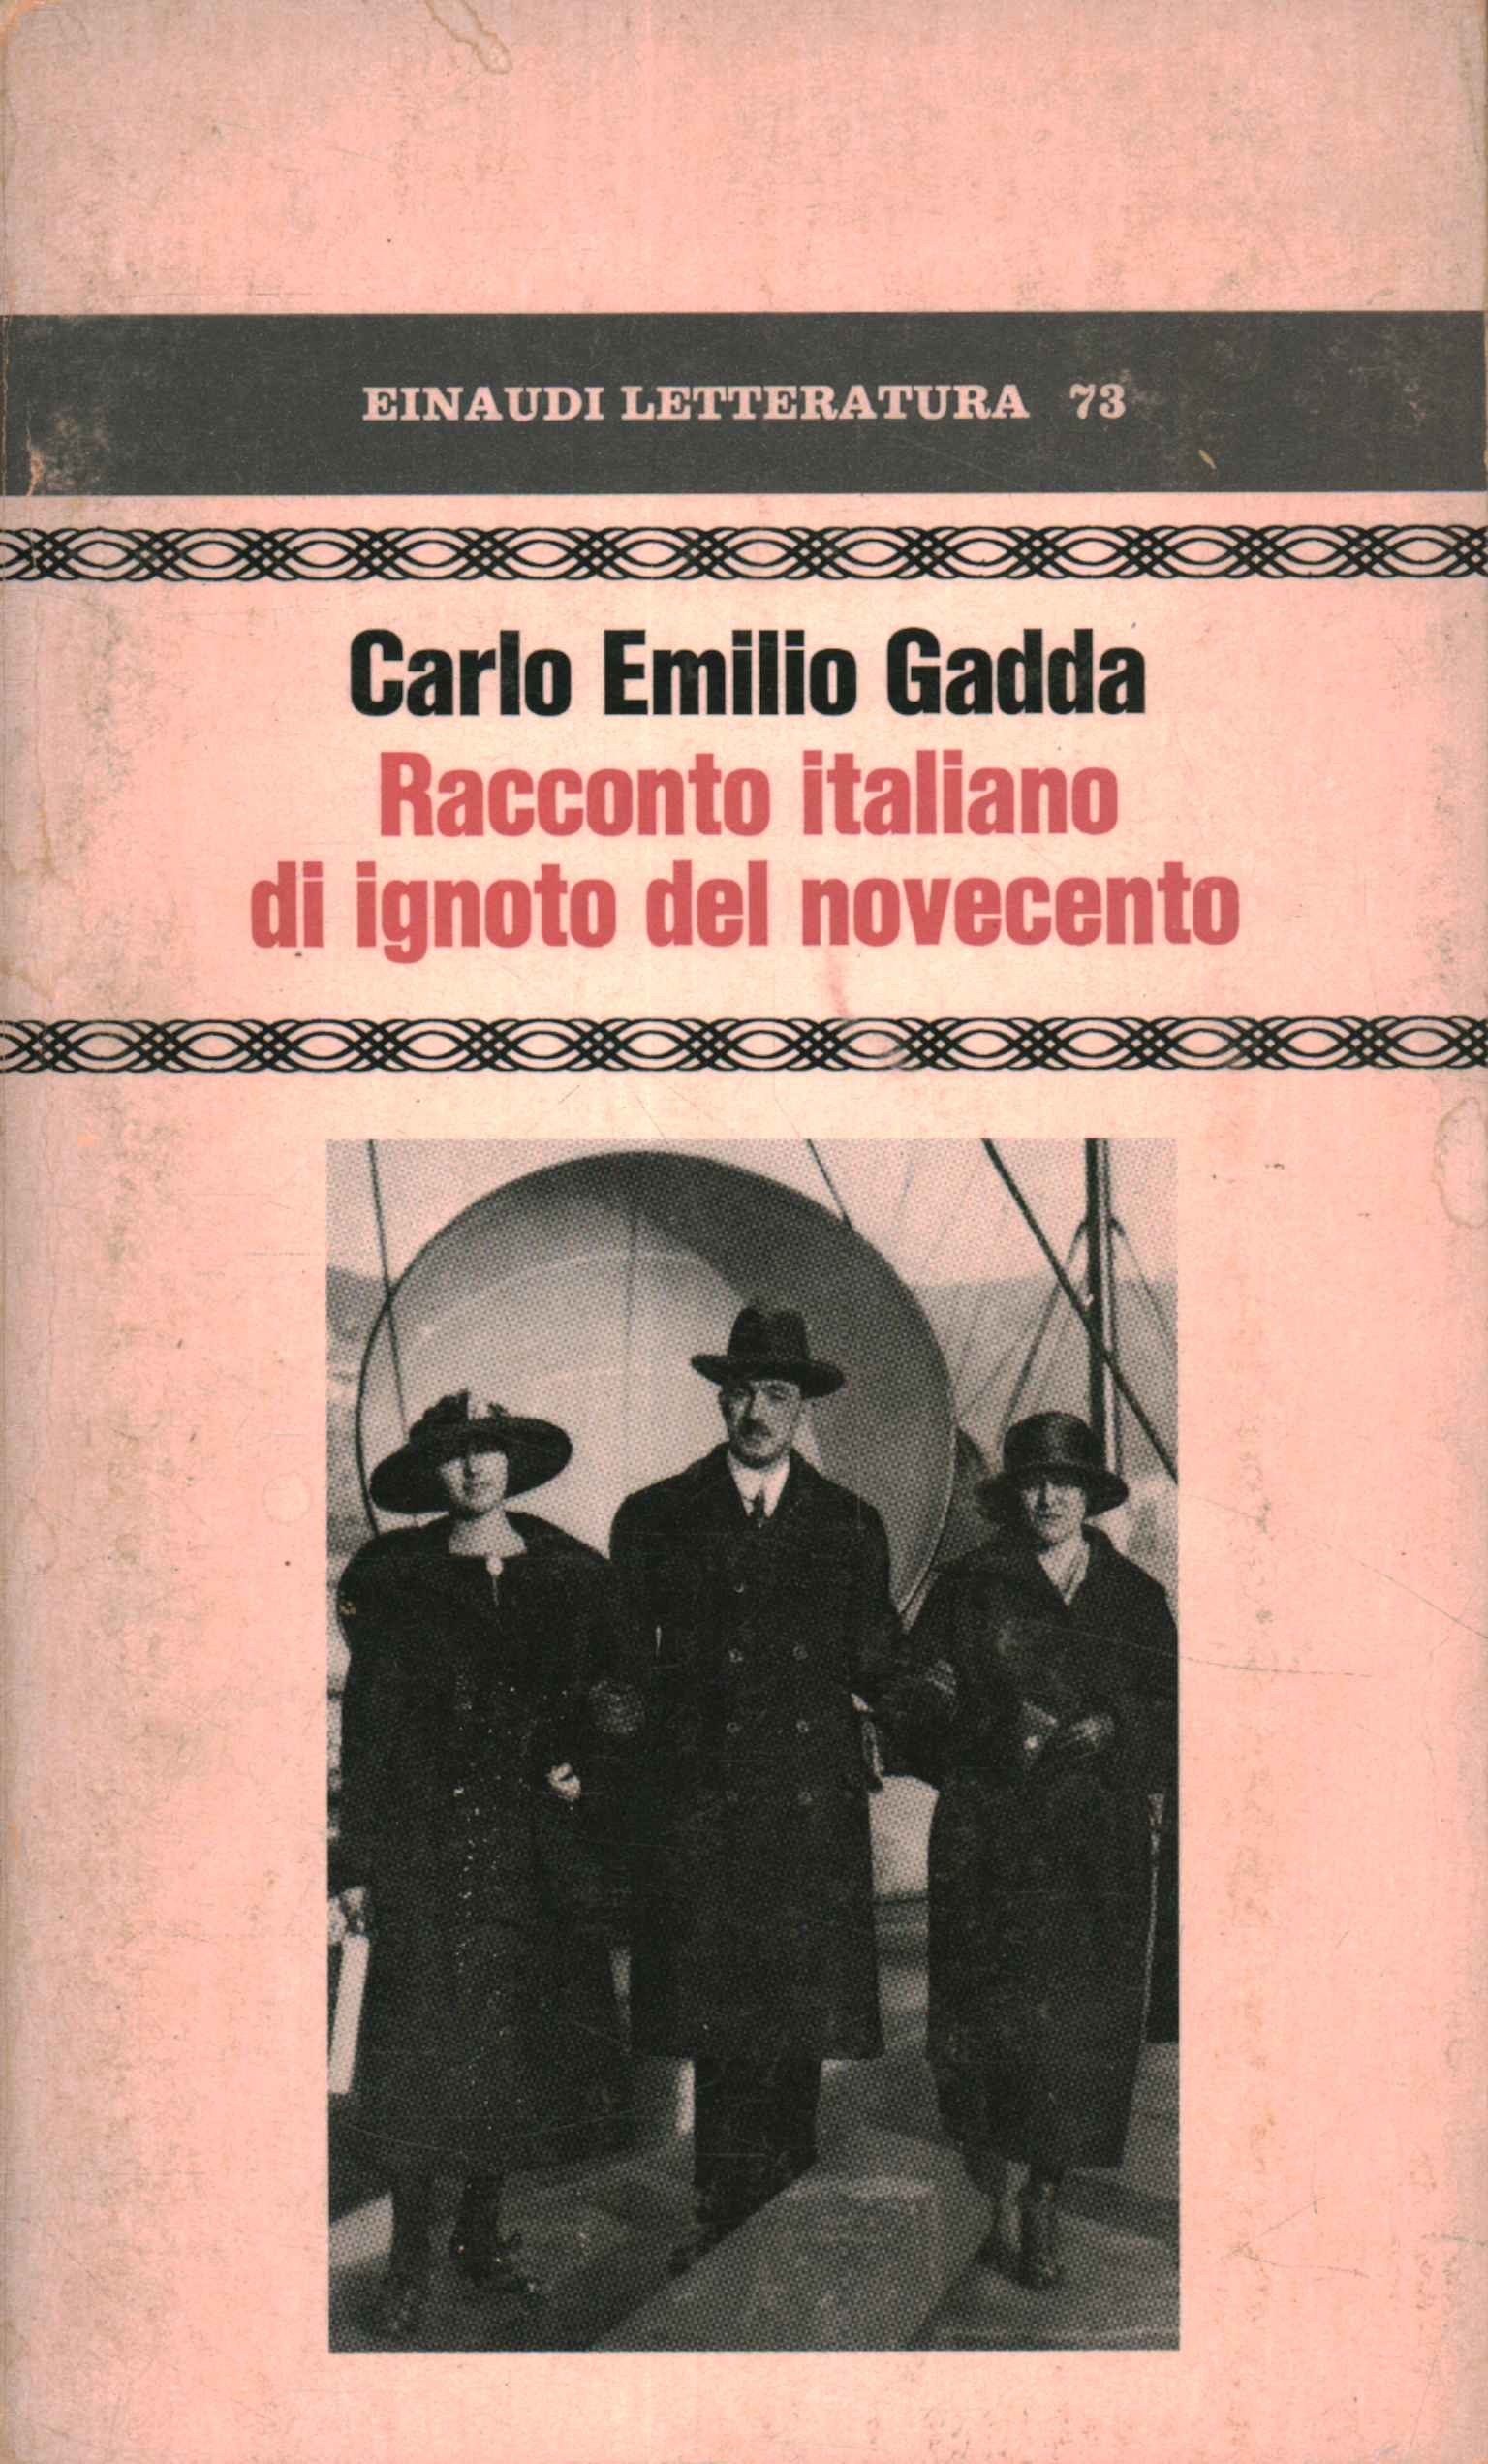 Cuento italiano de un hombre desconocido del siglo XX.